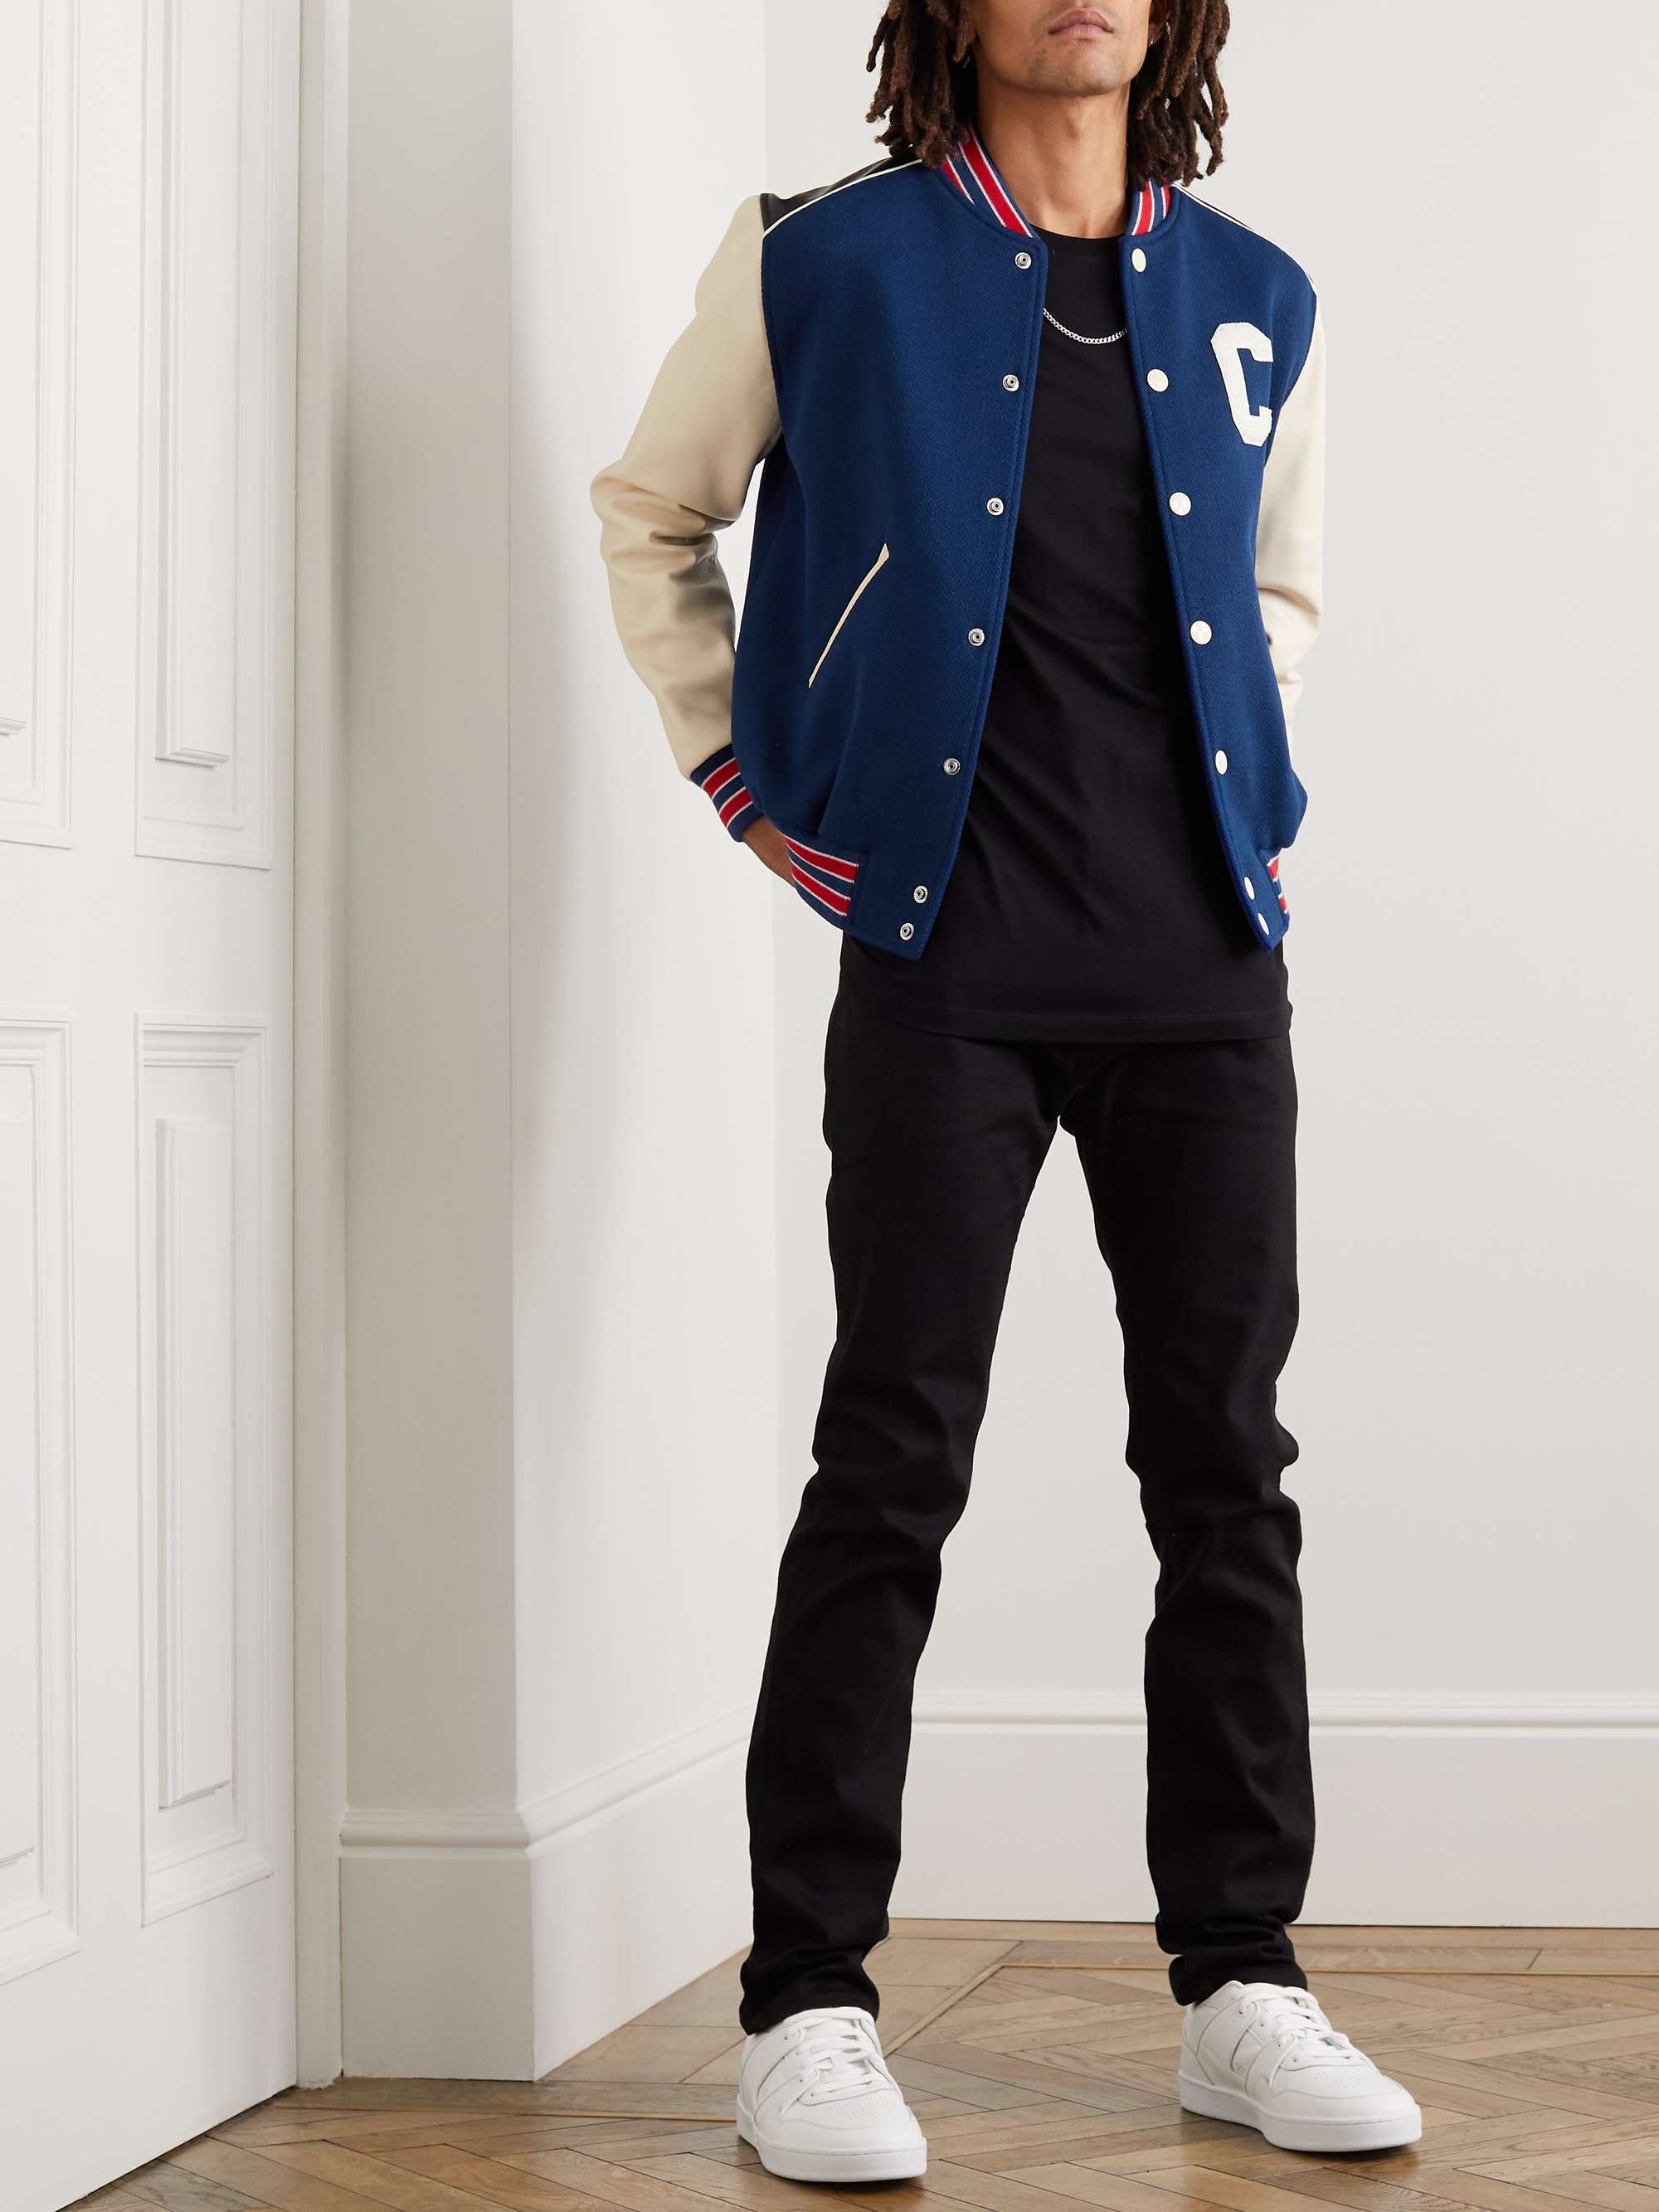 CELINE HOMME Logo-Appliquéd Wool-Blend and Leather Varsity Jacket | MR  PORTER